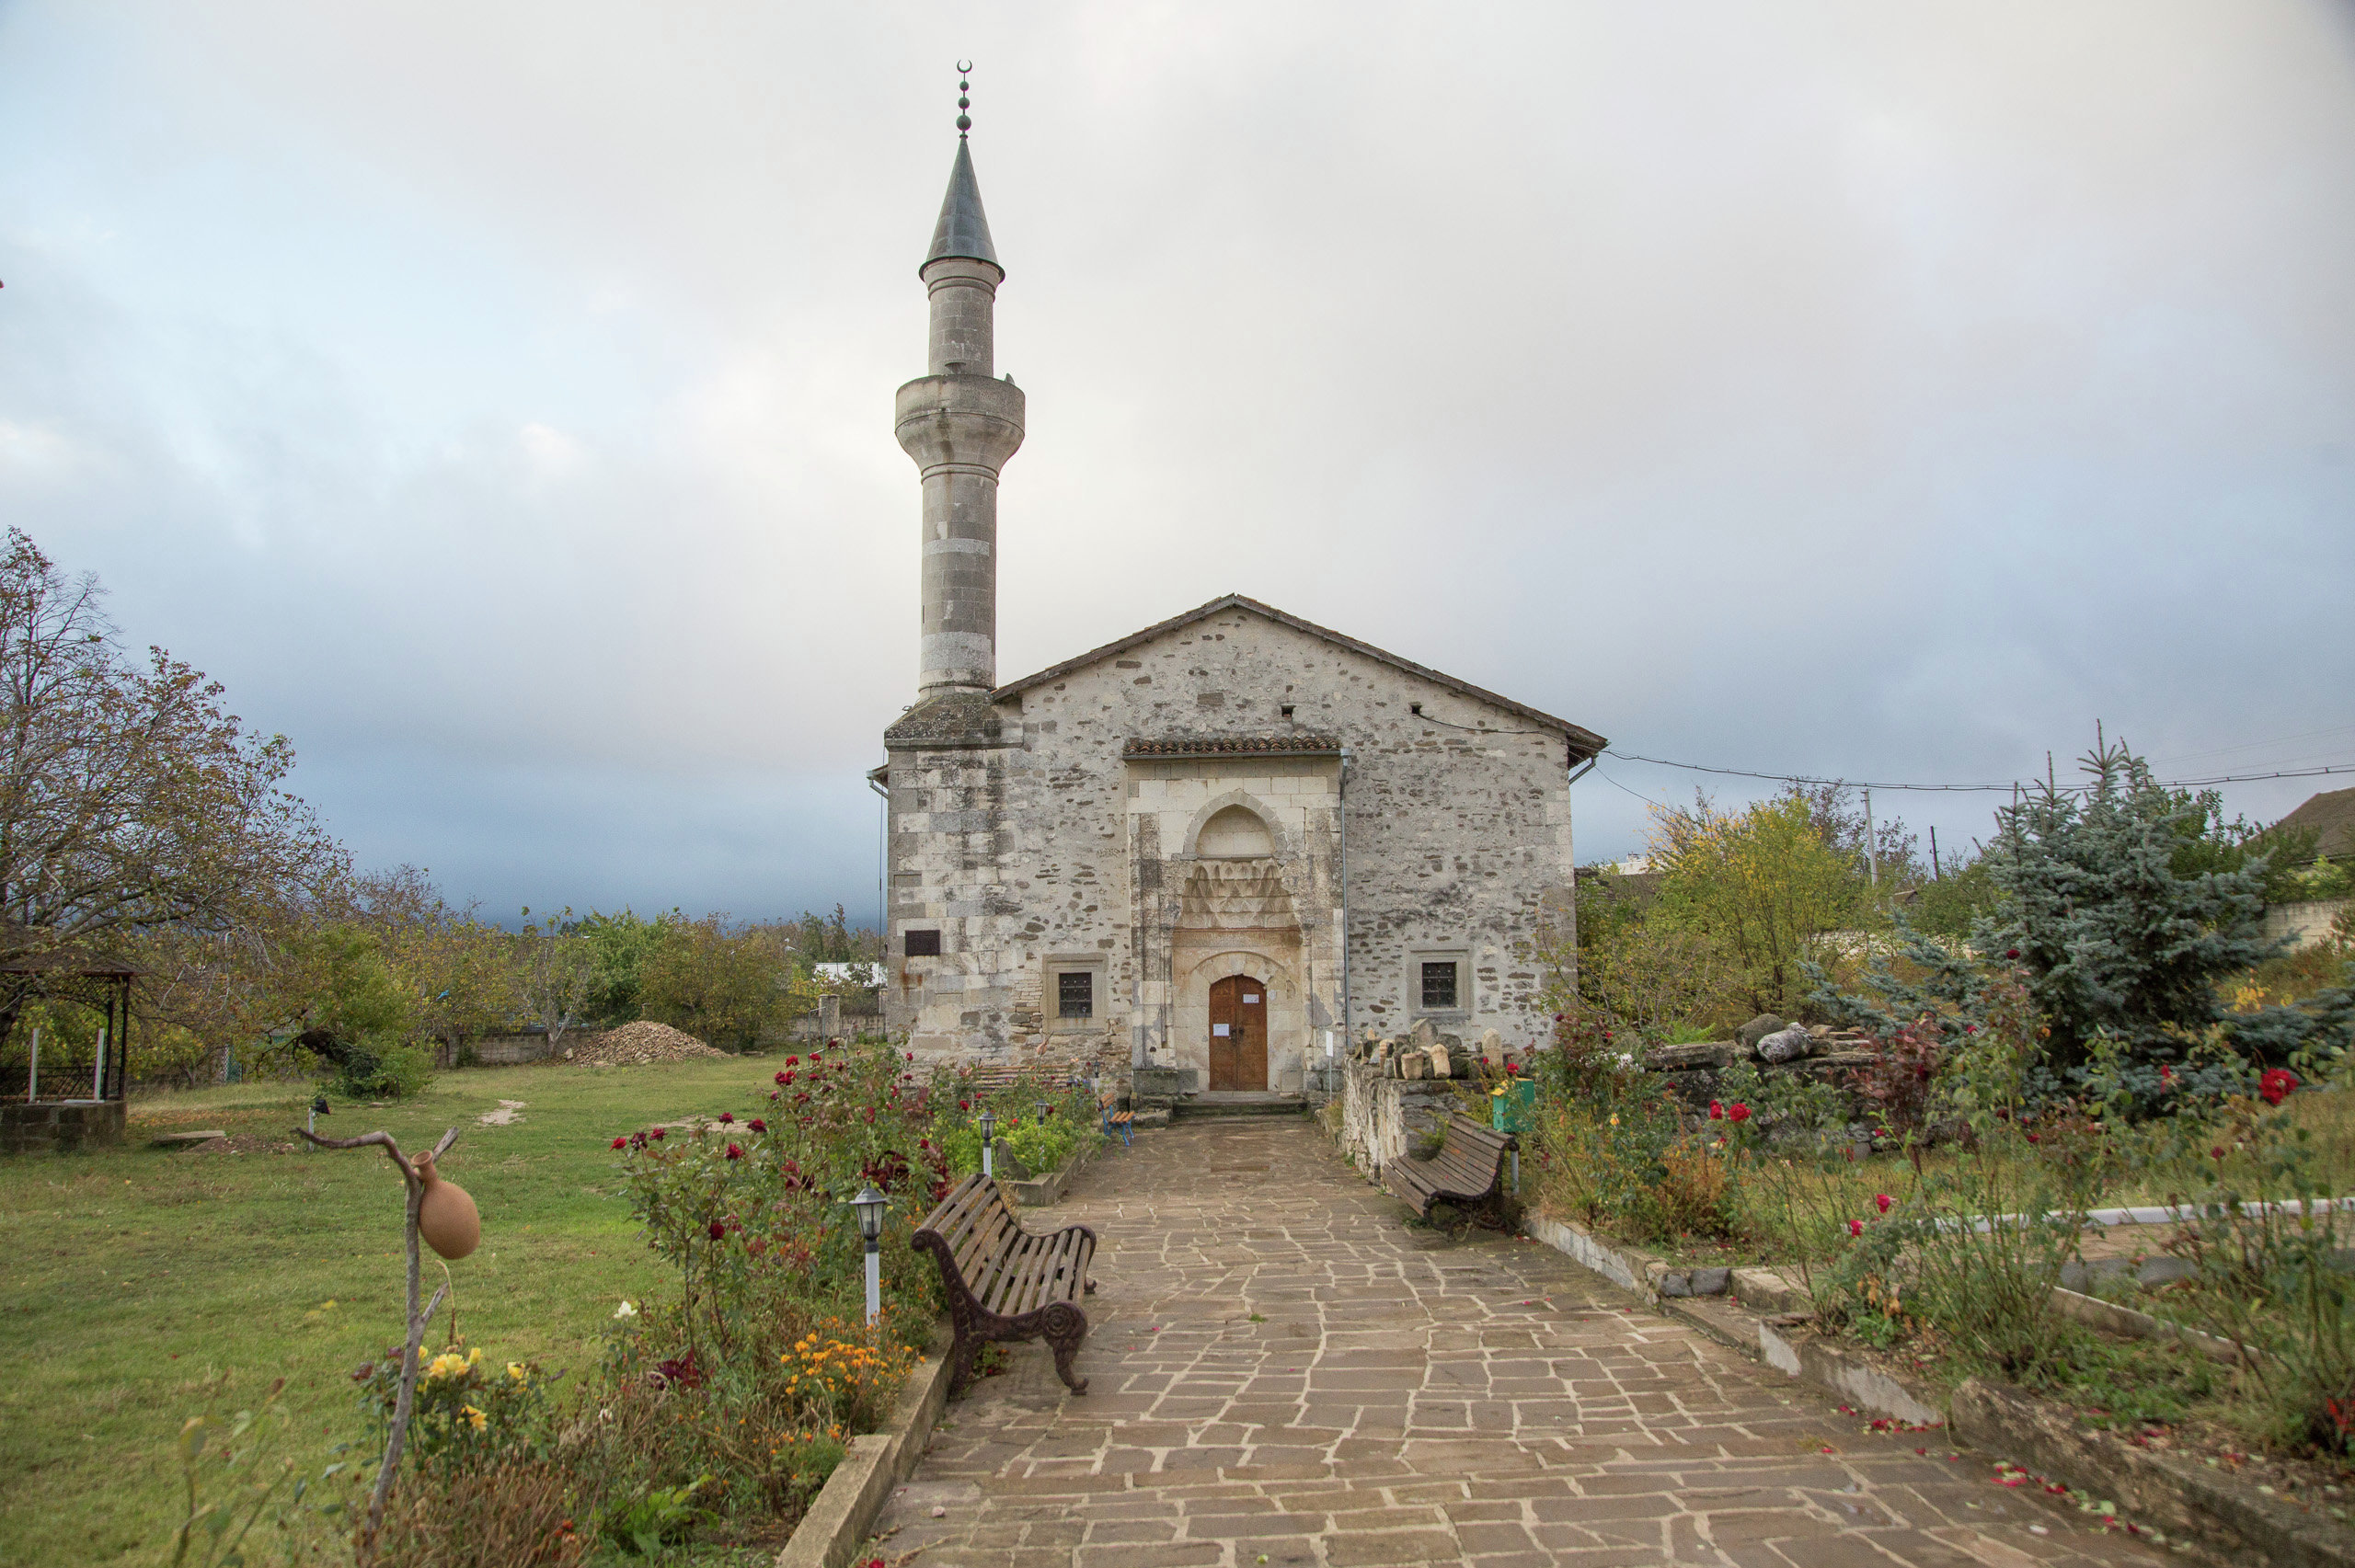 Khan Uzbek Mosque in the town of Stariy Krym